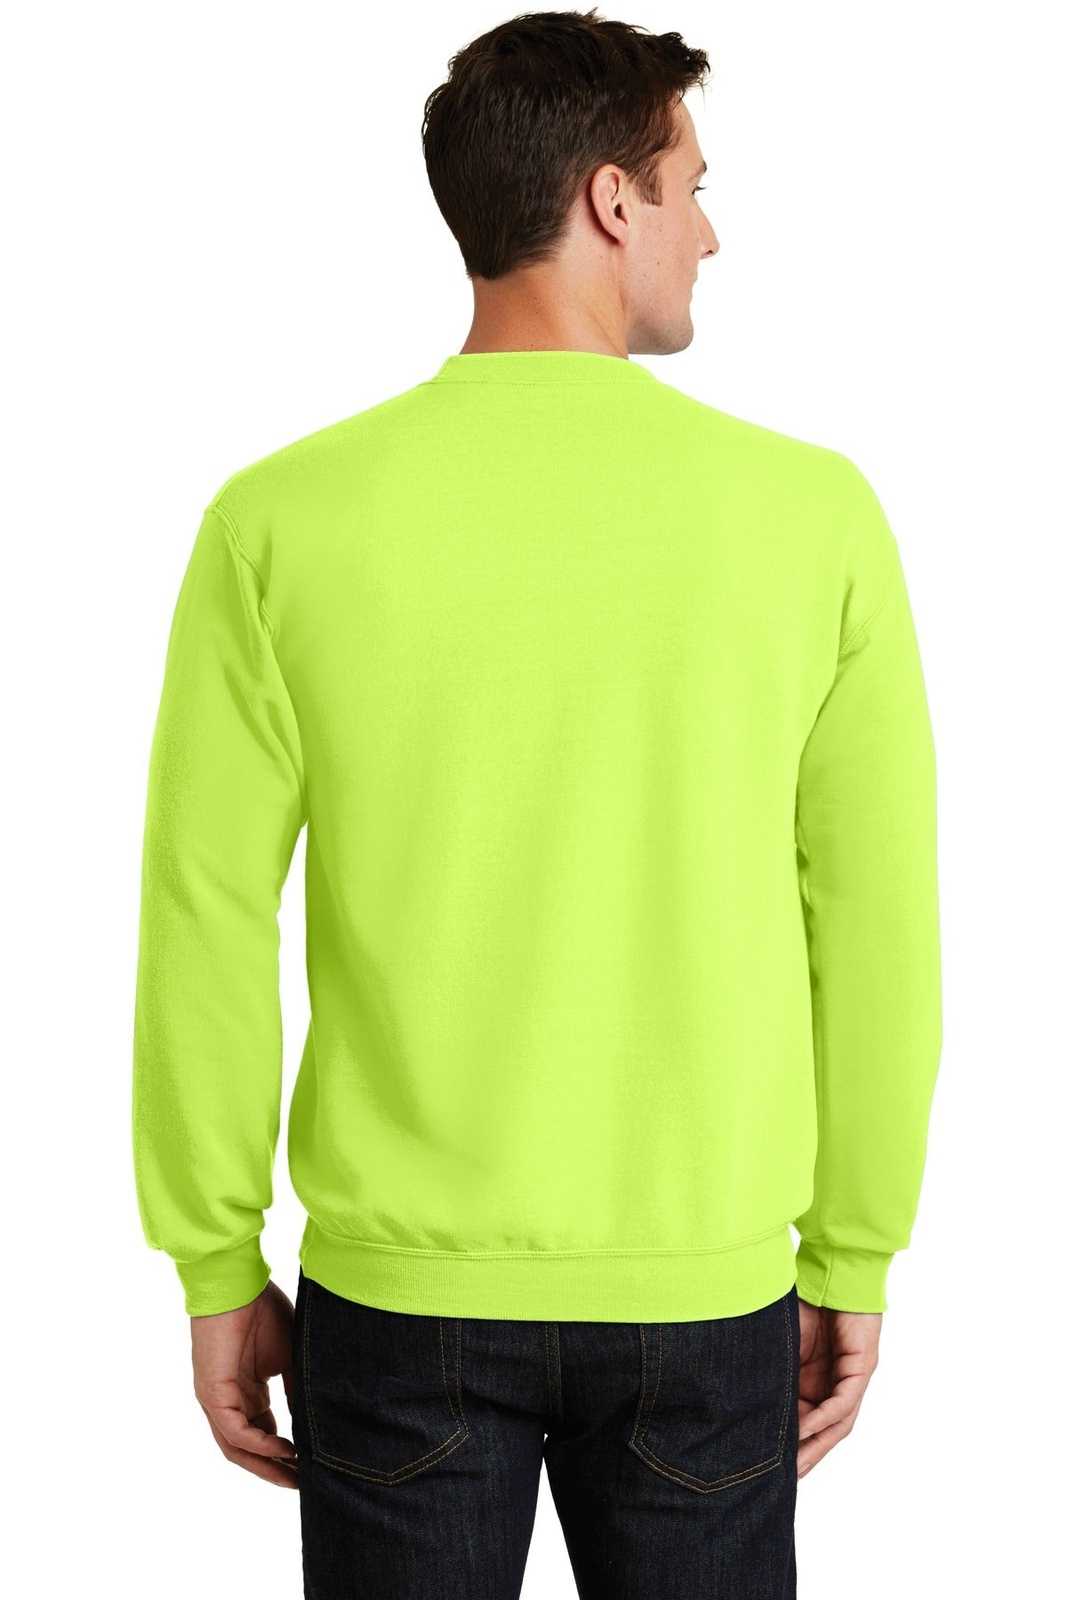 Port & Company PC78 Core Fleece Crewneck Sweatshirt - Neon Yellow - HIT a Double - 1